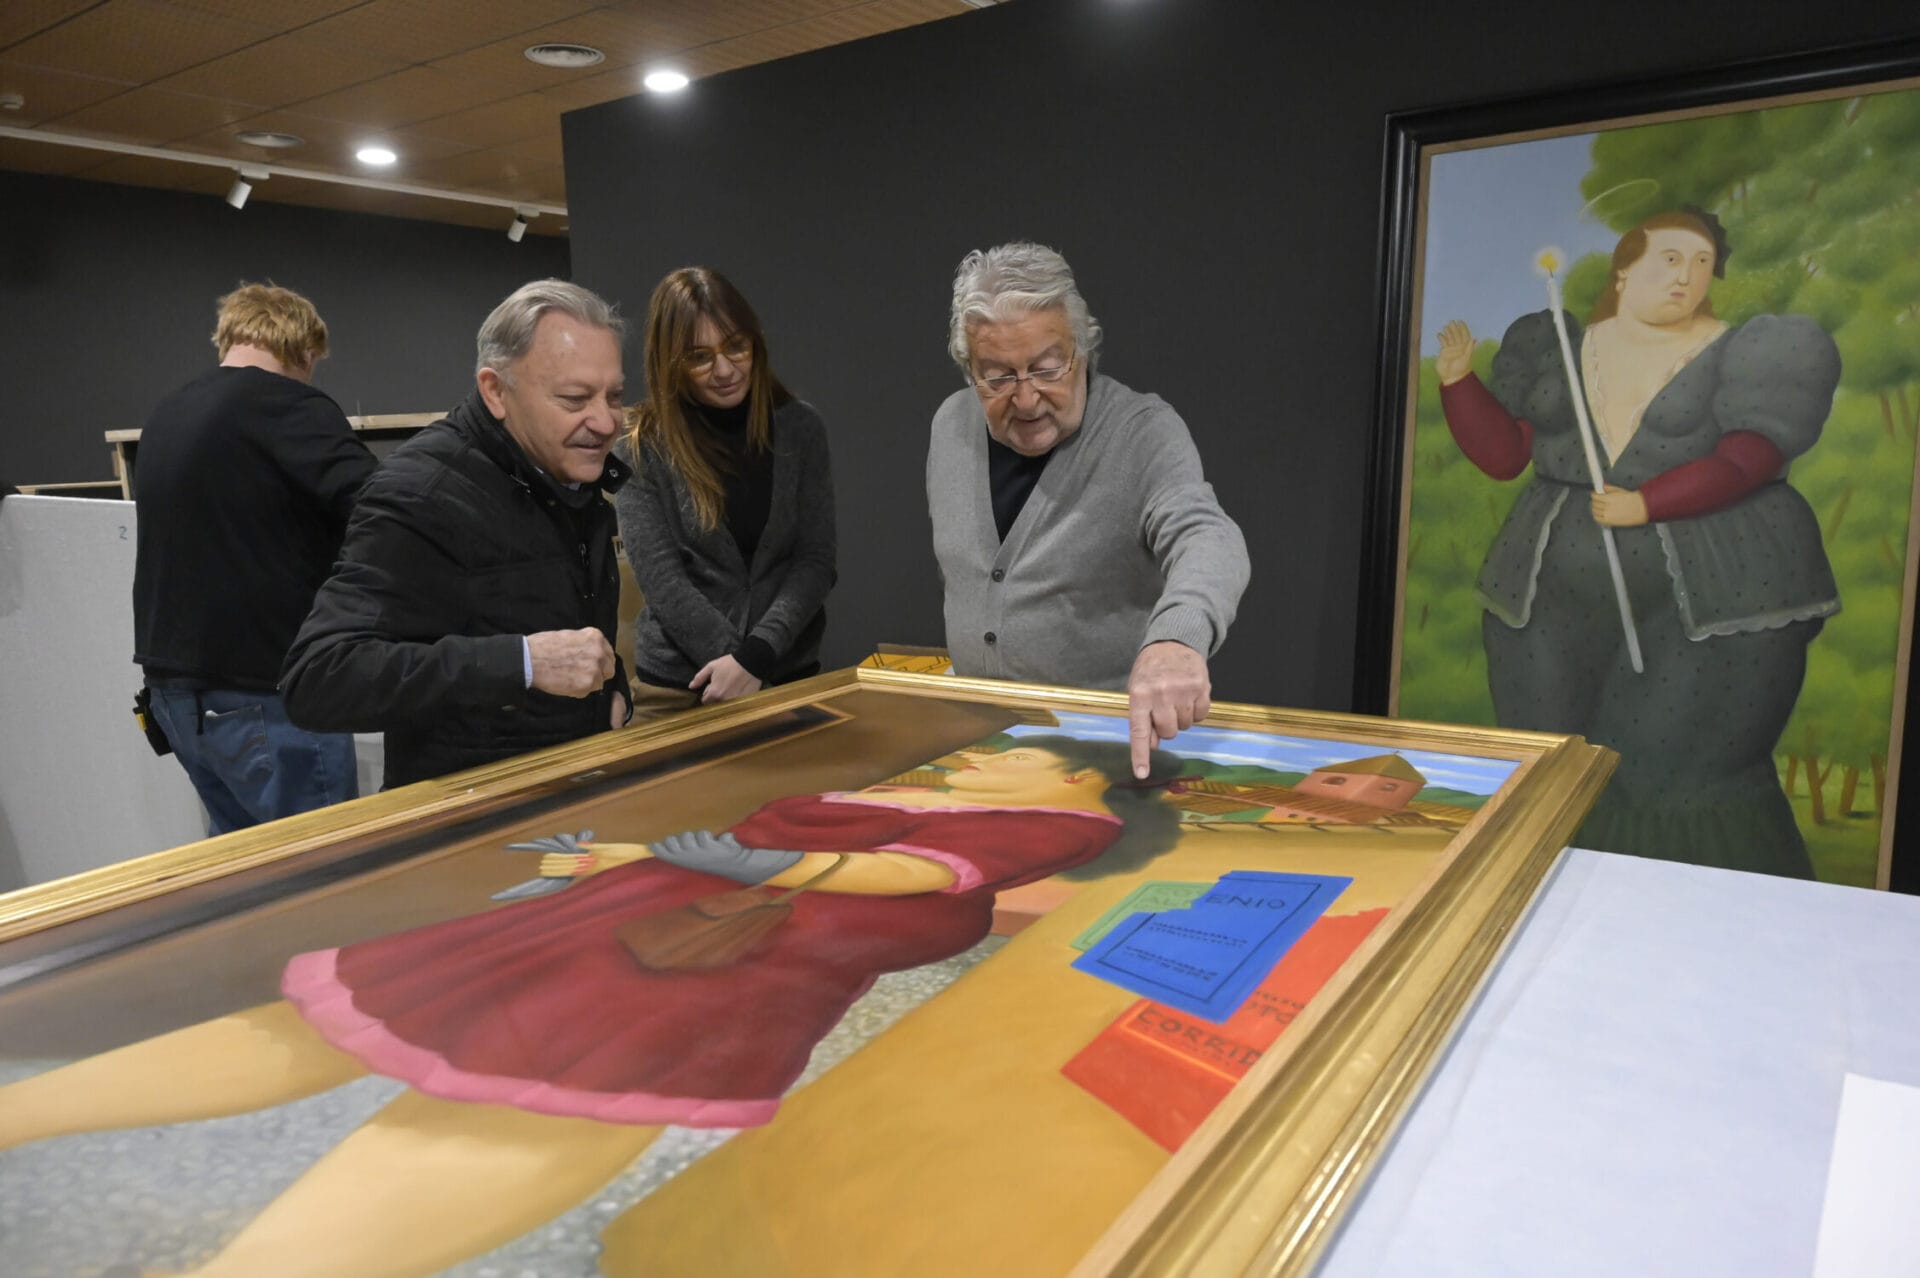 Las obras de Fernando Botero llegan a la Fundación Bancaja para su primera exposición retrospectiva en València